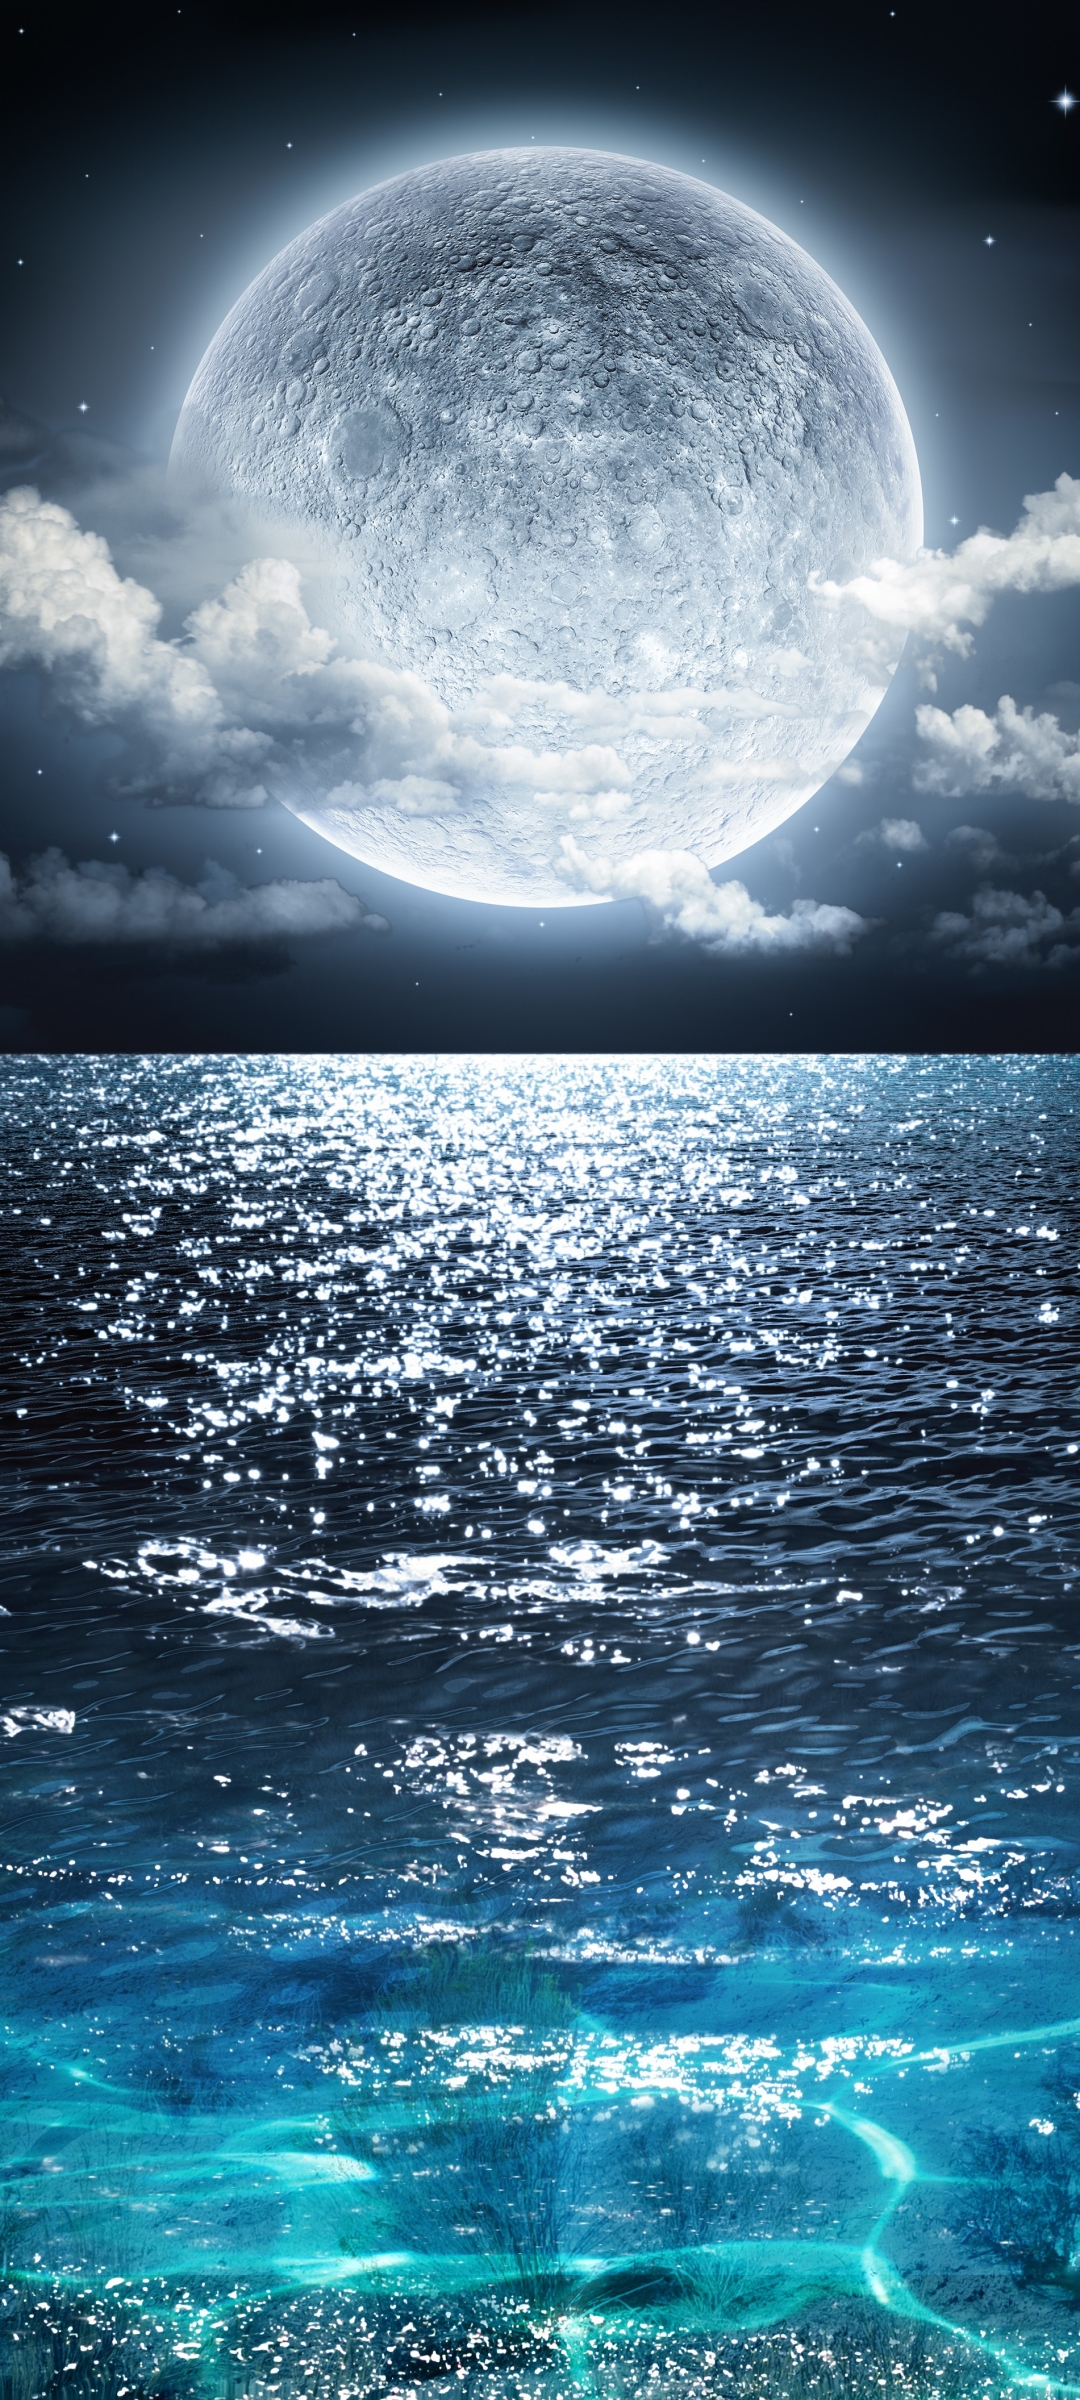 Descarga gratuita de fondo de pantalla para móvil de Mar, Noche, Luna, Océano, Tierra/naturaleza.